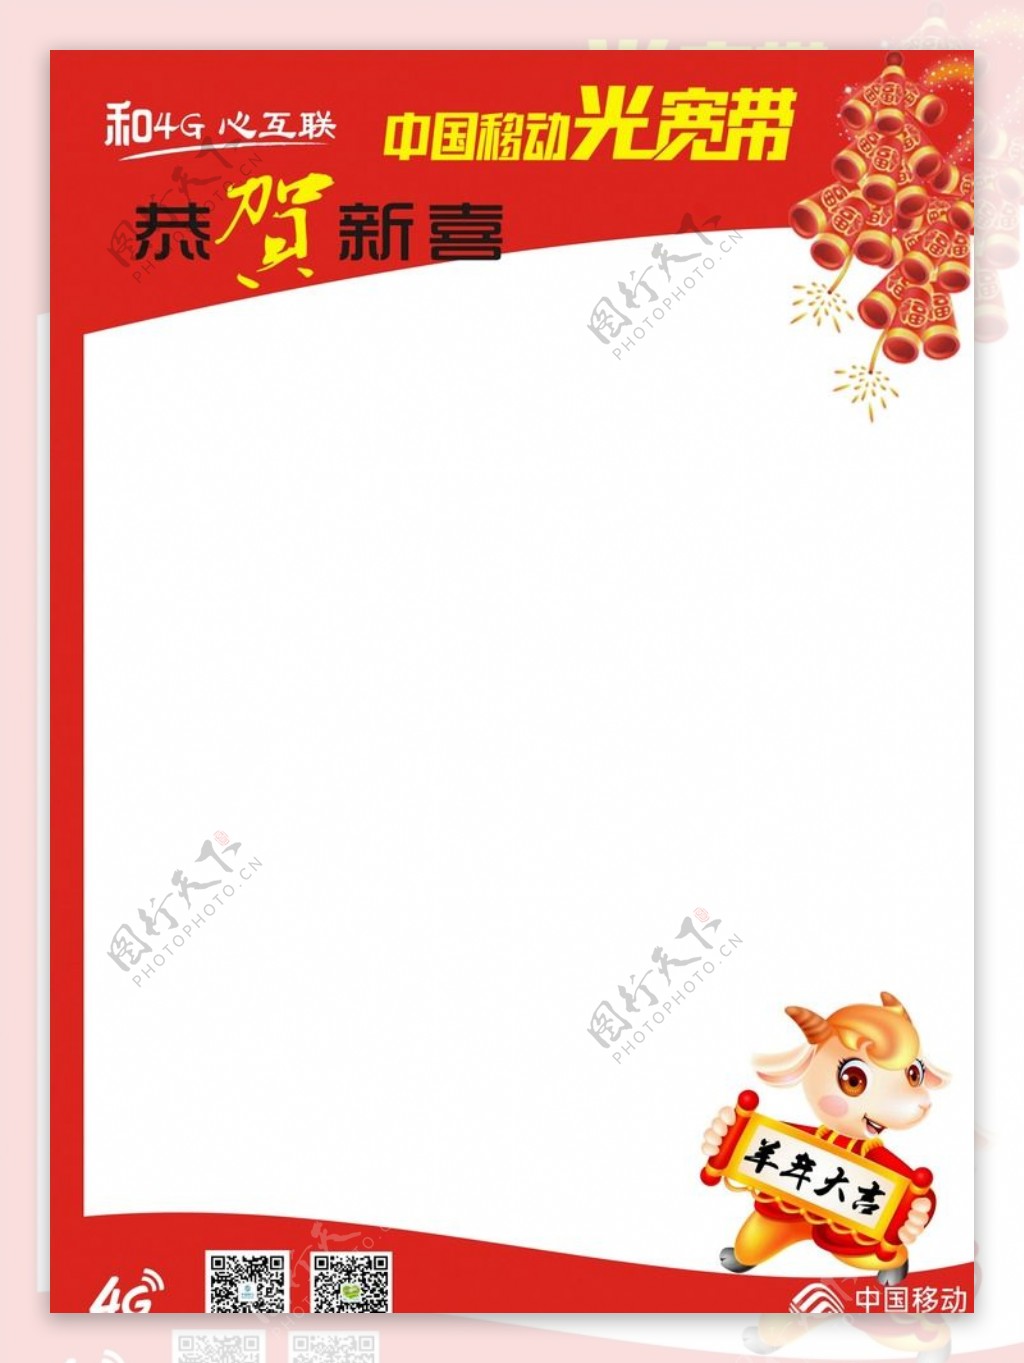 中国移动宽带新年海报空白海报图片